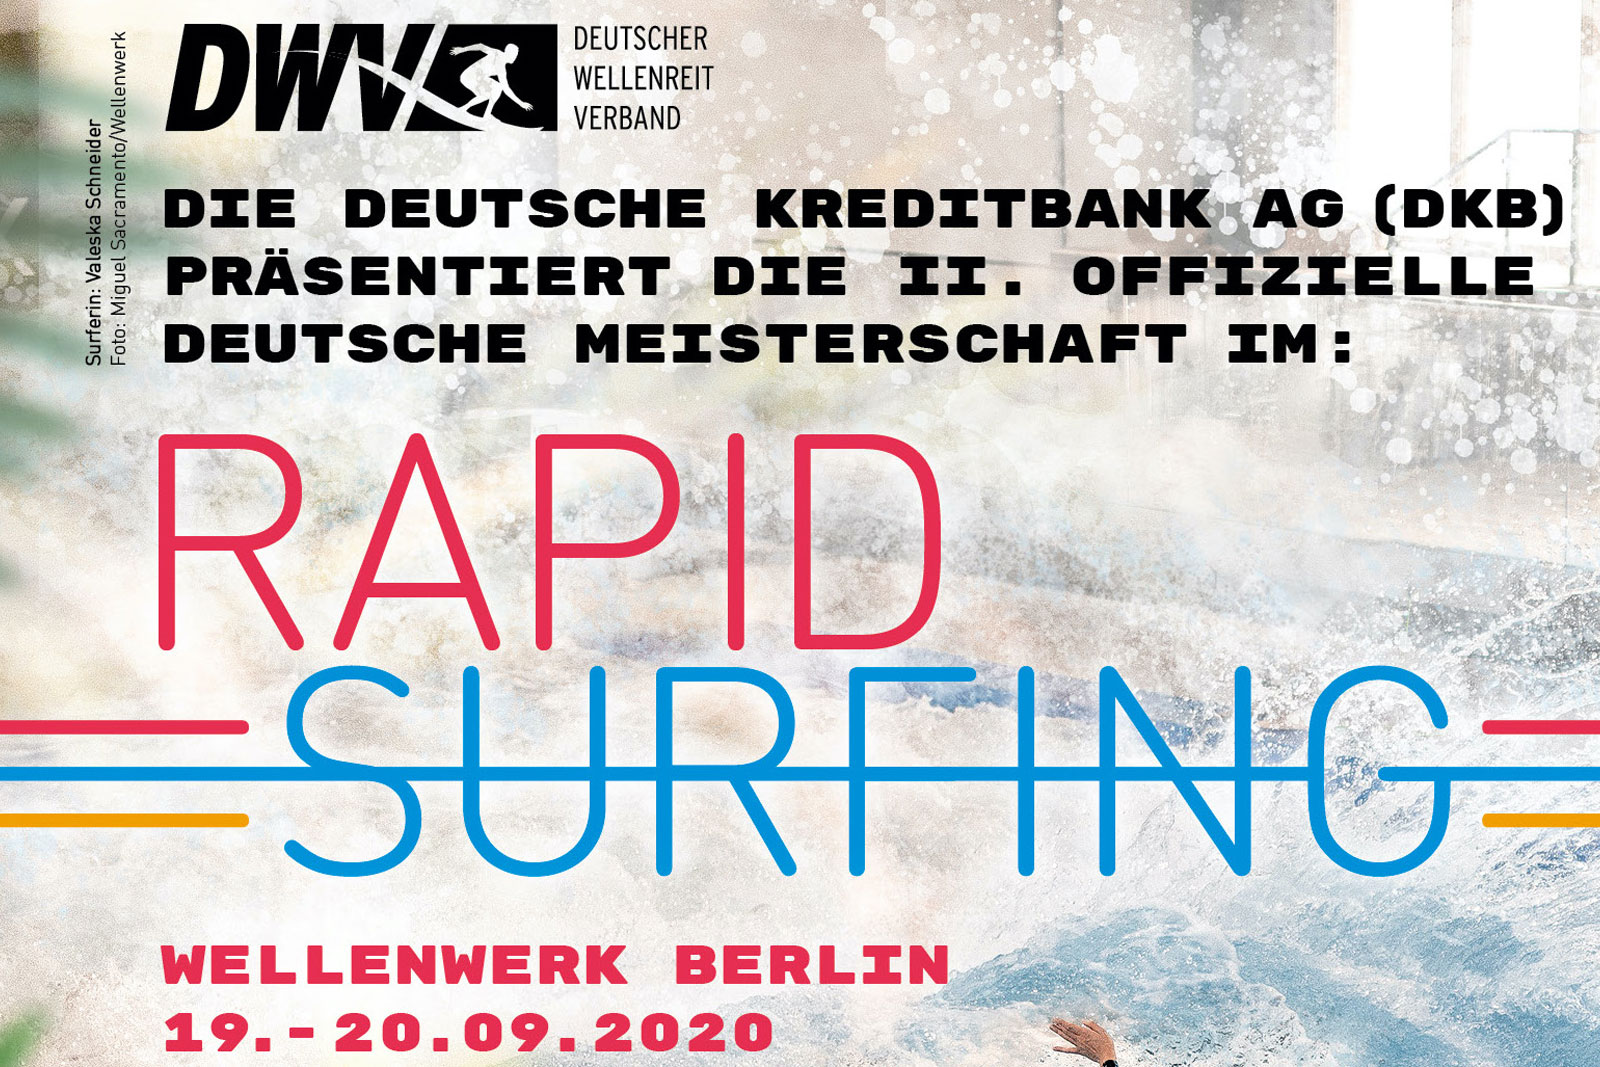 Zweite Deutsche Meisterschaft im Rapid Surfing in Berlin